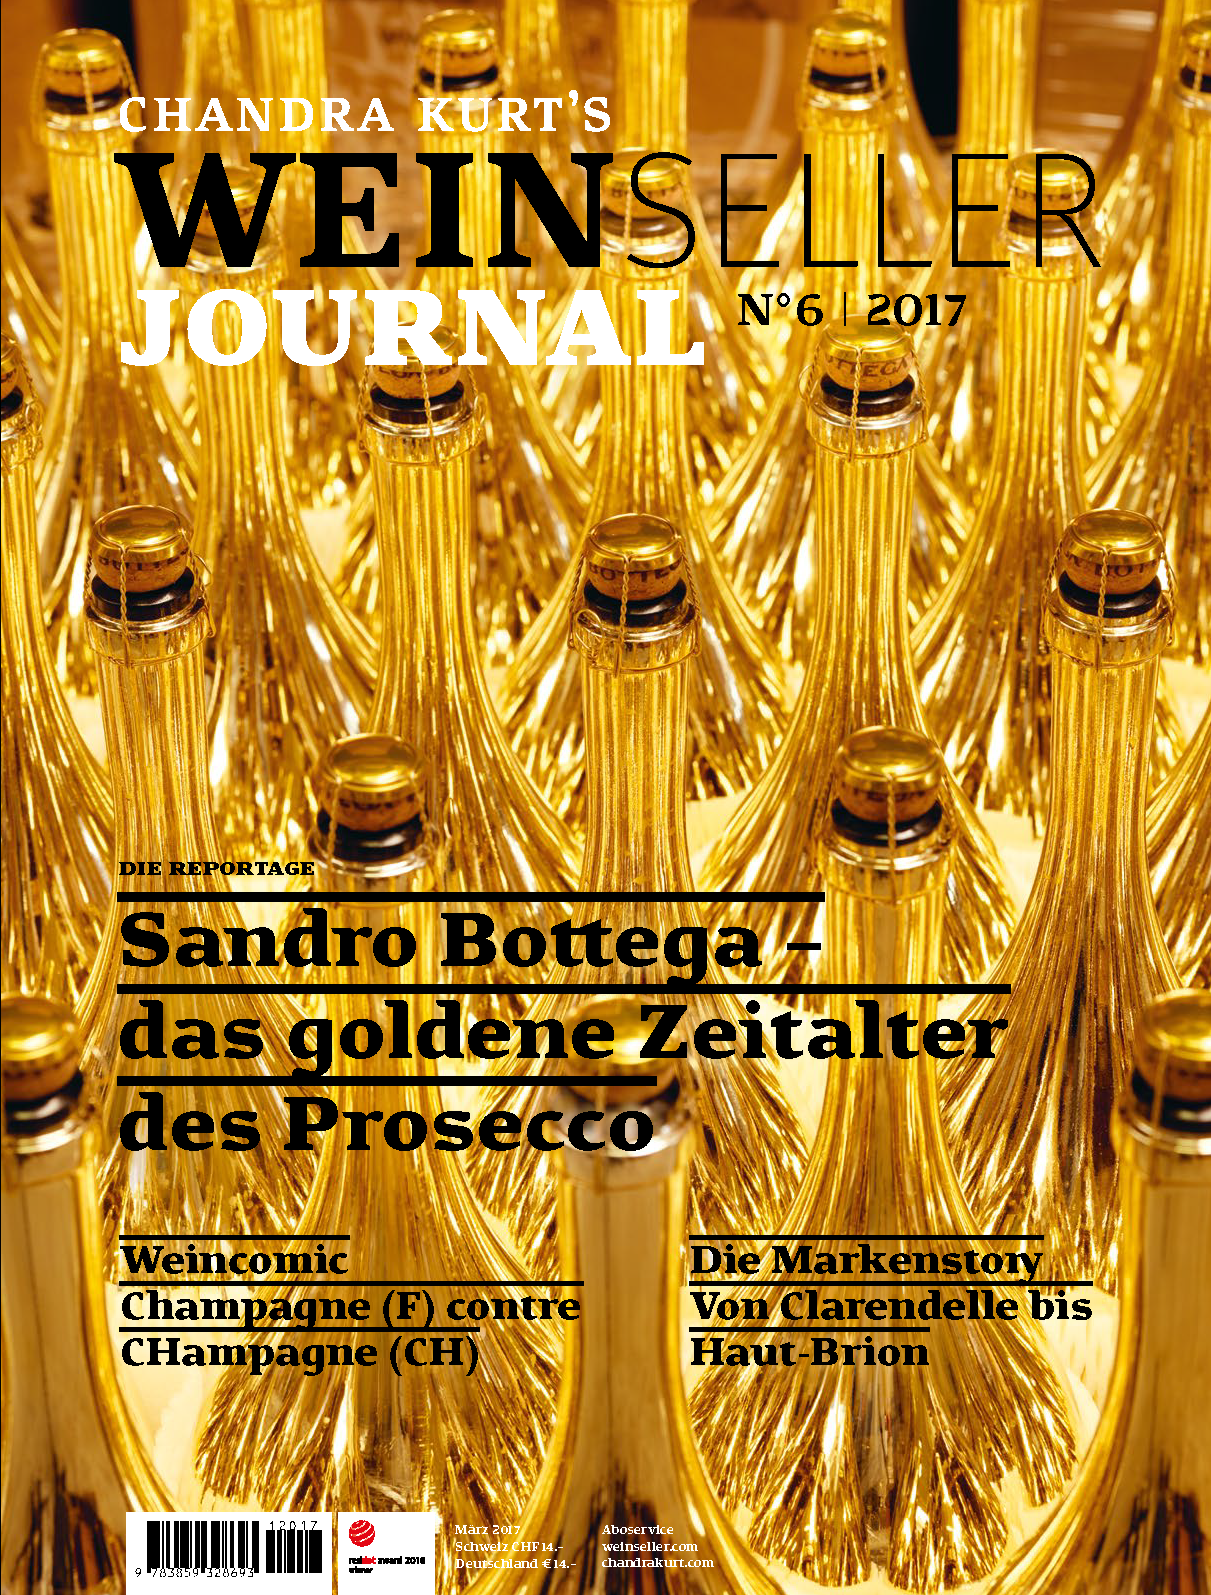 Weinseller Journal 06/17 - WEBER VERLAG